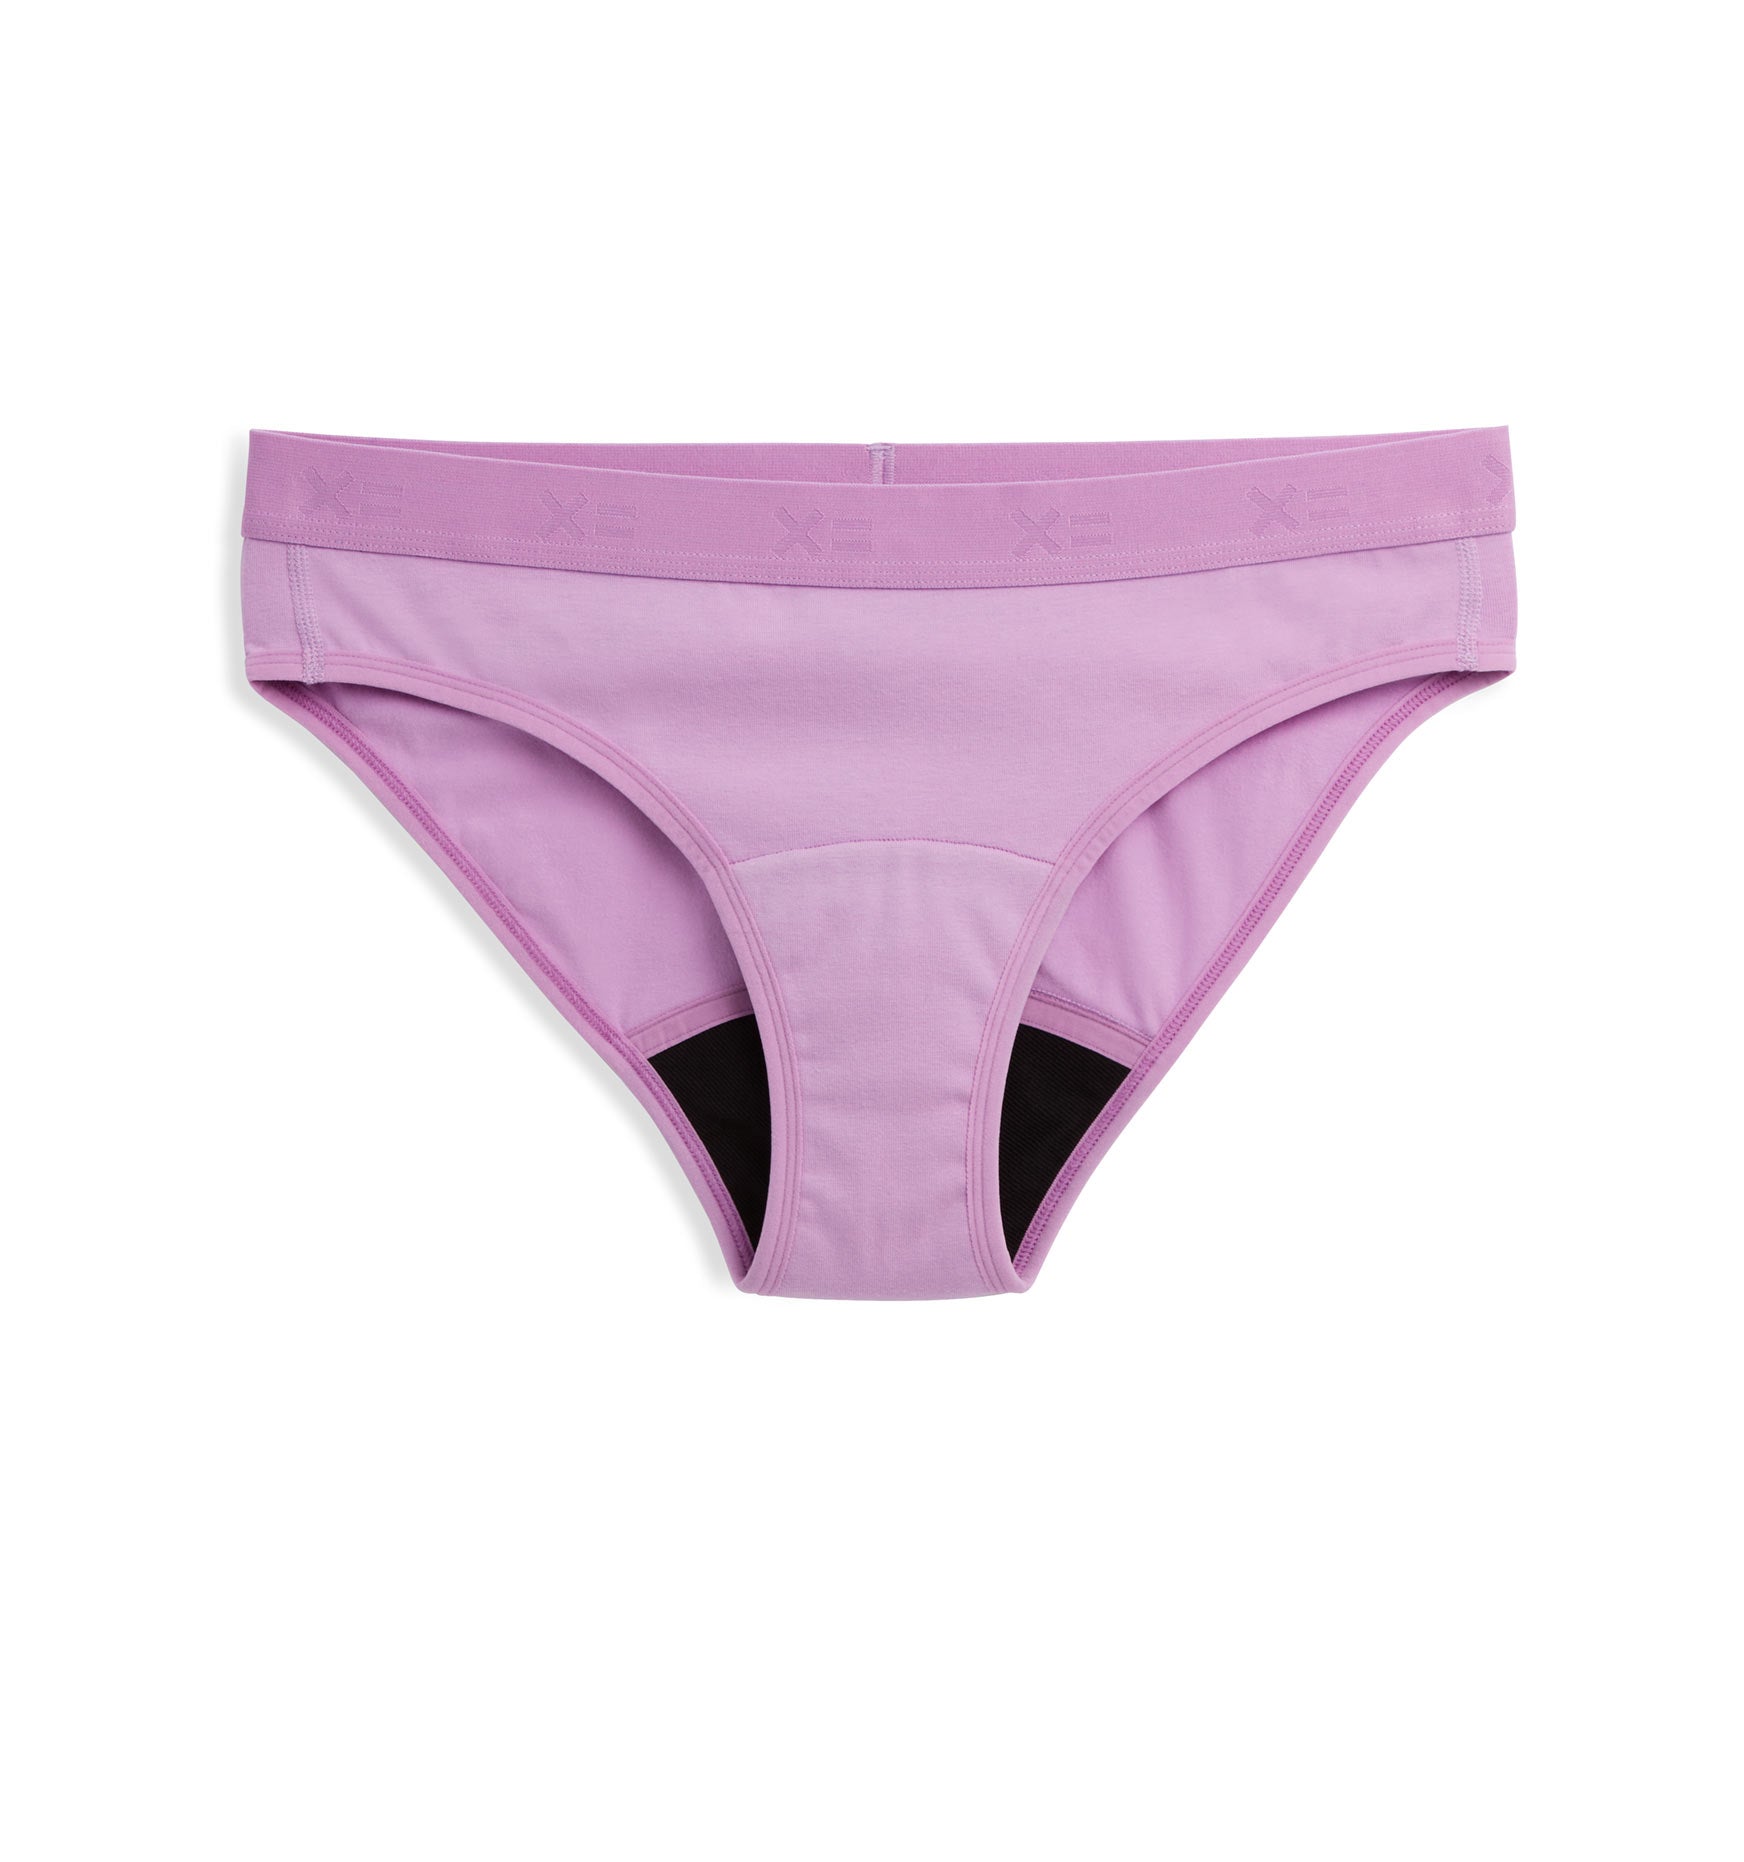 First Line Period Bikini - Sugar Violet